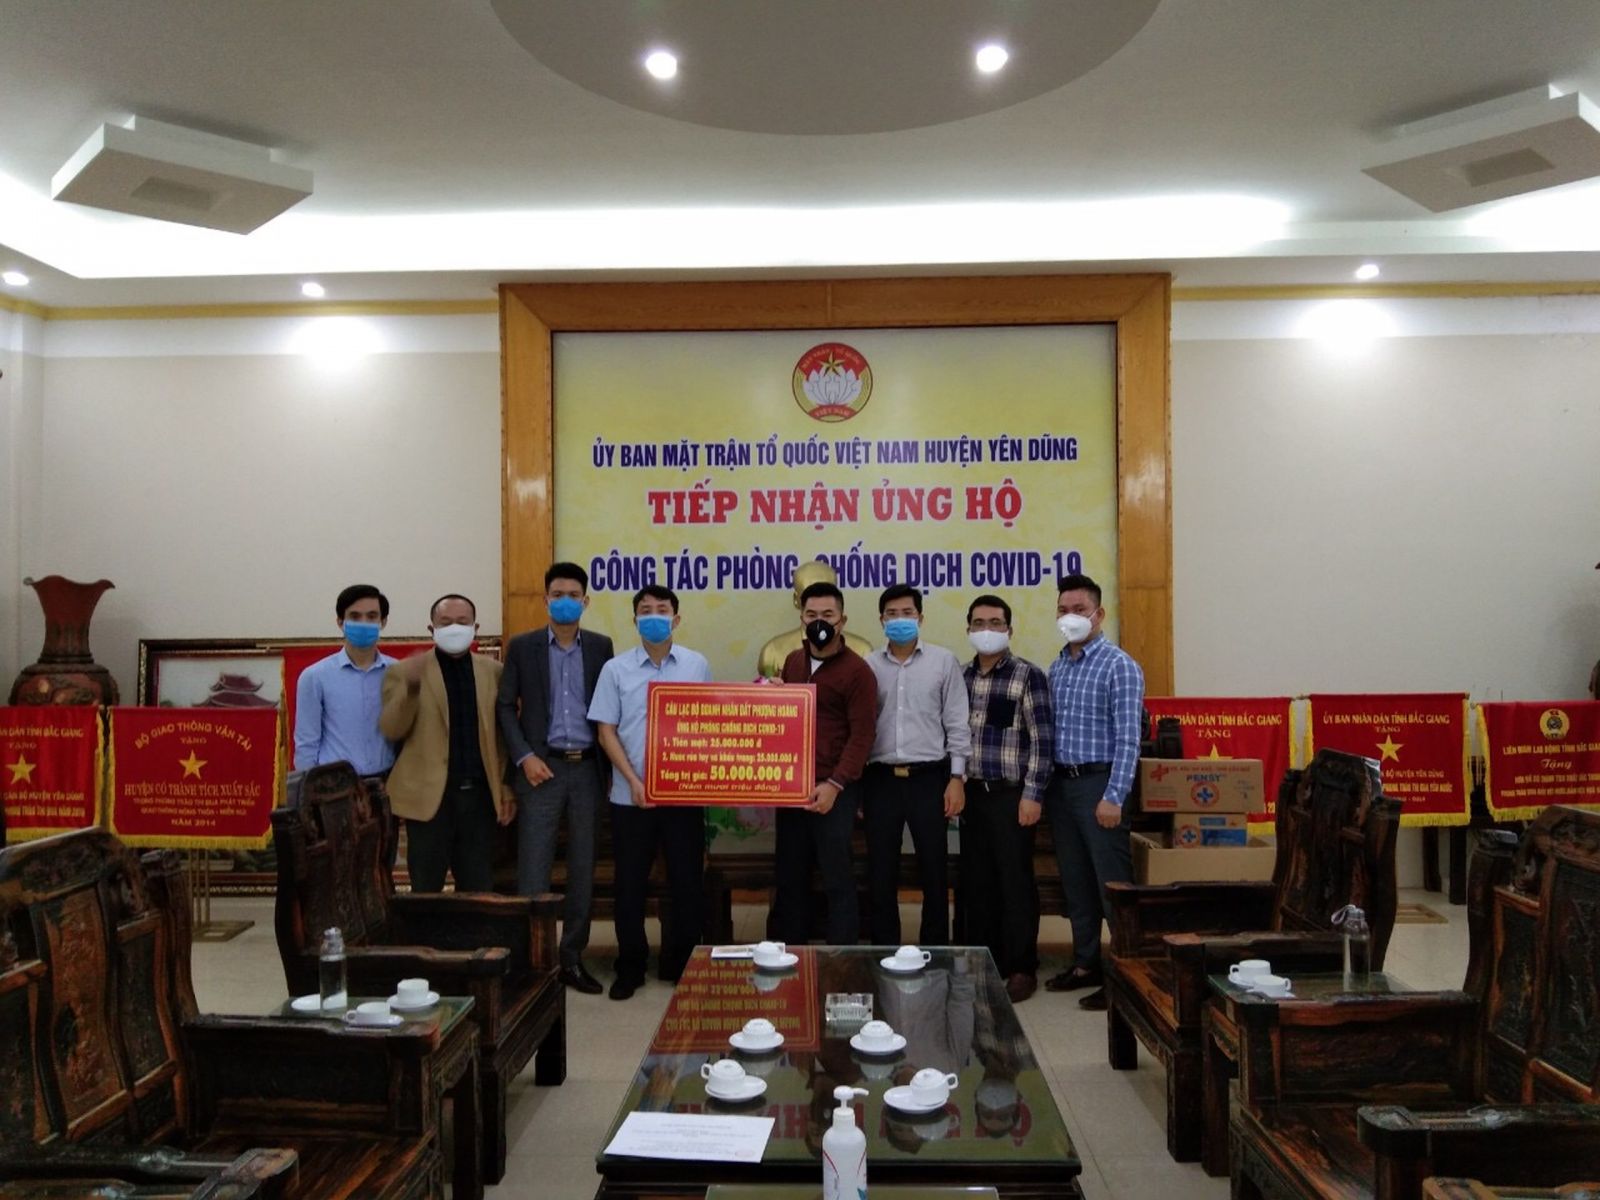 CLB Doanh nhân Đất Phượng Hoàng ủng hộ chống dịch covid 19 cho huyện Yên Dũng, Bắc Giang.